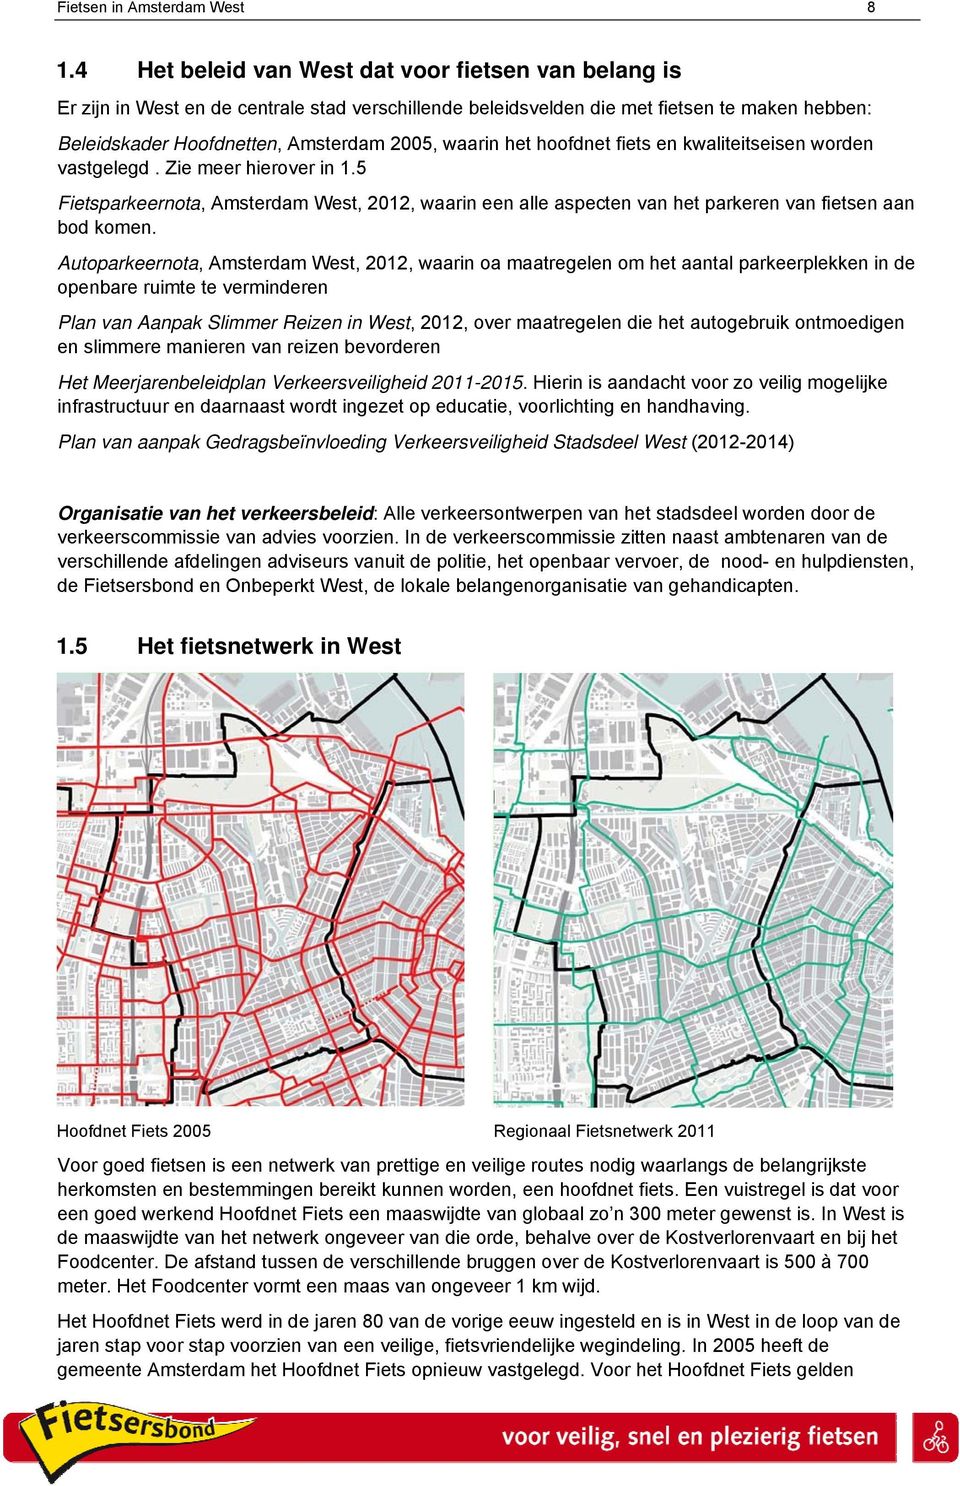 het hoofdnet fiets en kwaliteitseisen worden vastgelegd. Zie meer hierover in 1.5 Fietsparkeernota, Amsterdam West, 2012, waarin een alle aspecten van het parkeren van fietsen aan bod komen.